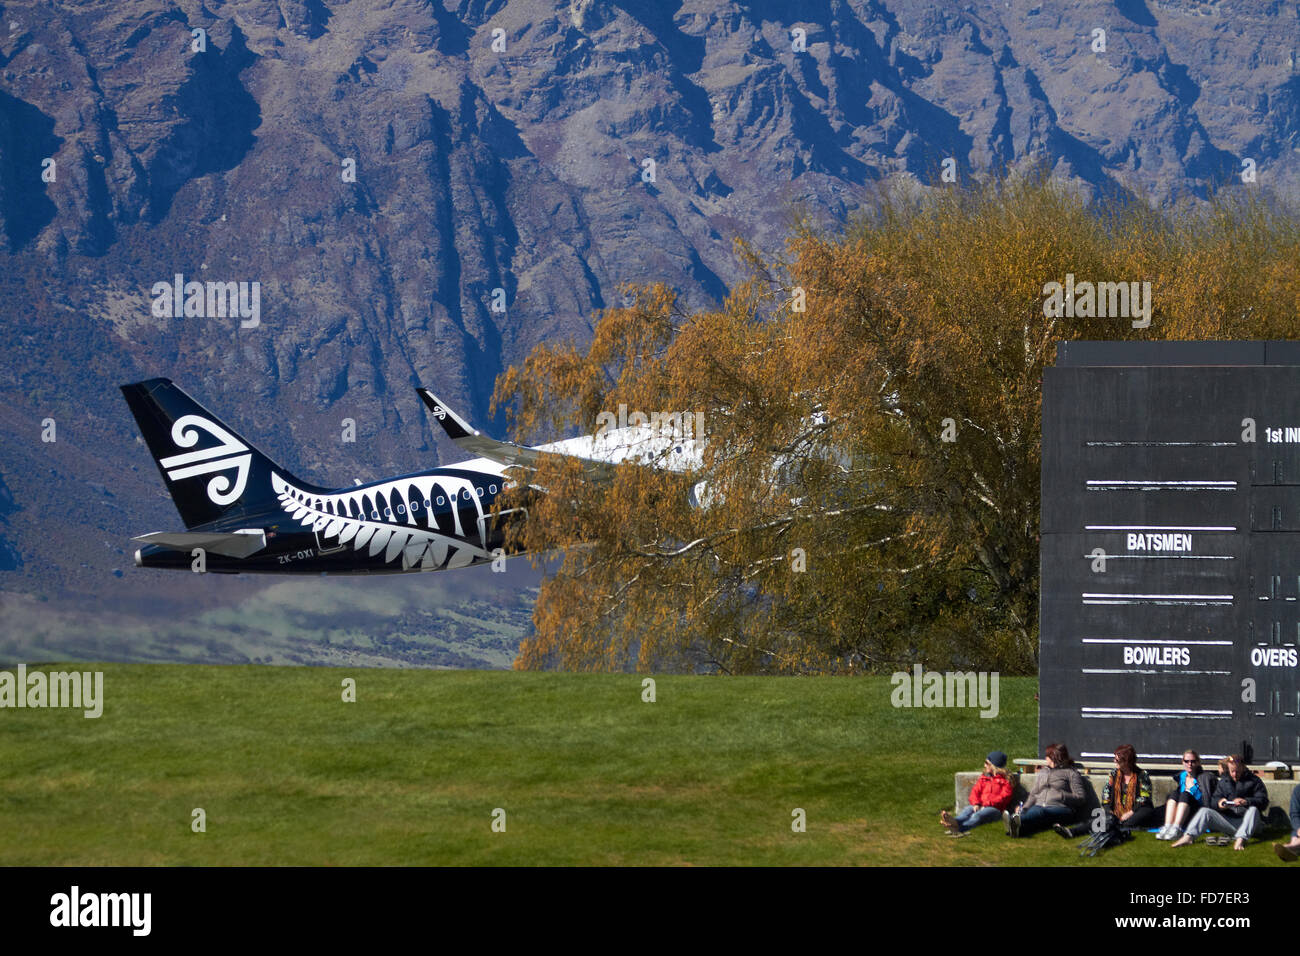 Air New Zealand A320 Airbus avion au décollage de l'aéroport de Queenstown, Otago, île du Sud, Nouvelle-Zélande Banque D'Images